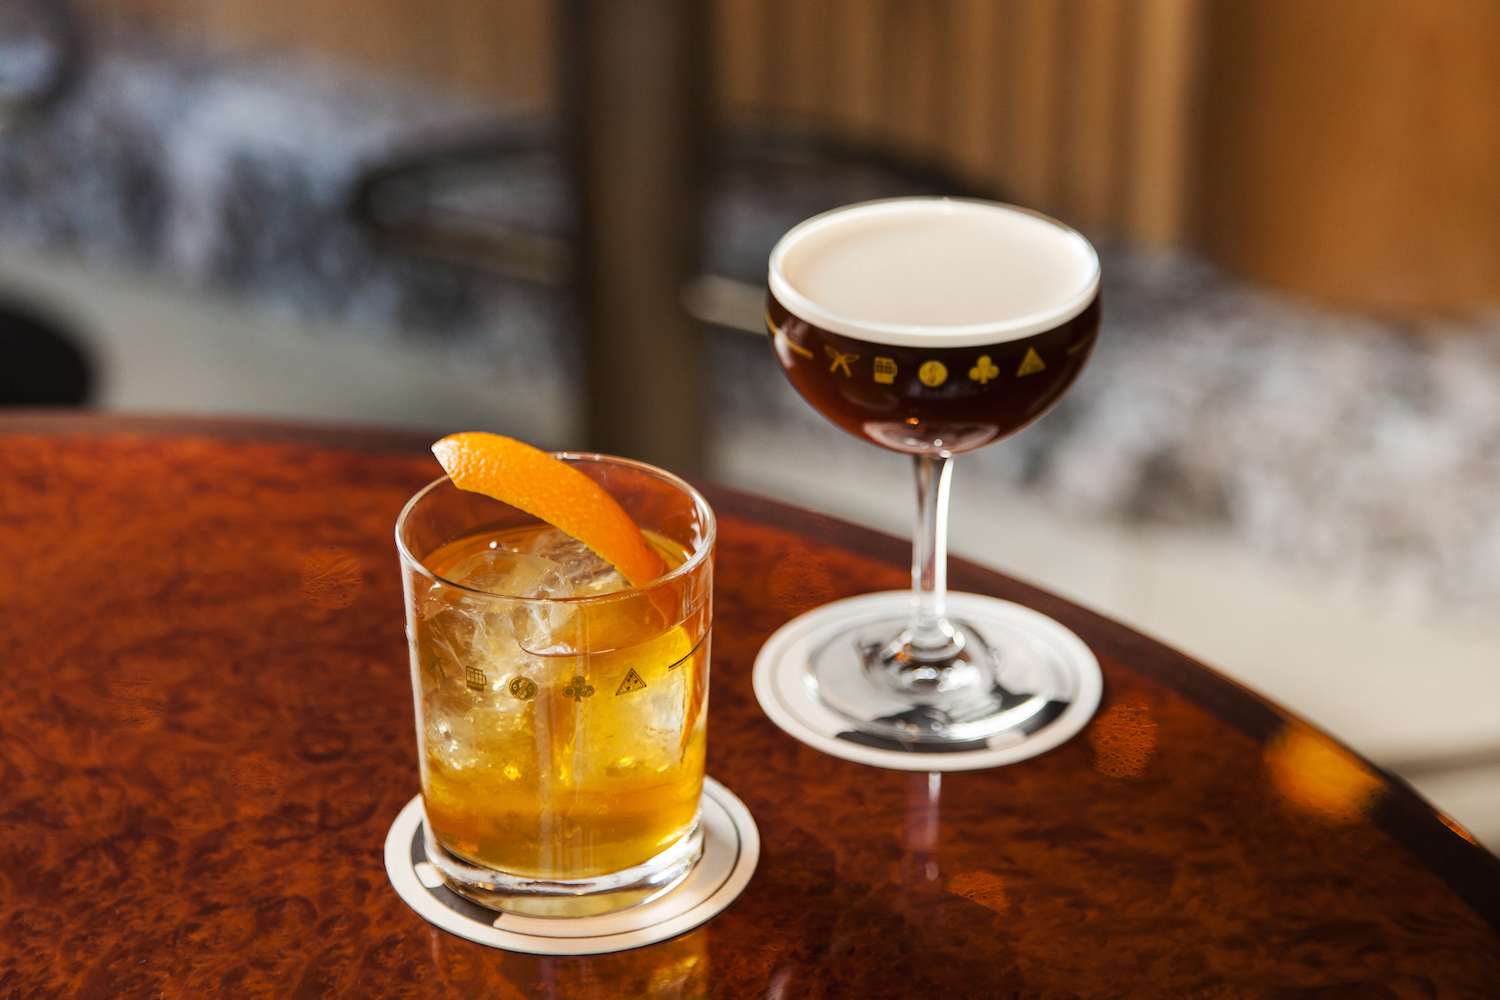 old fashioned and espresso martini